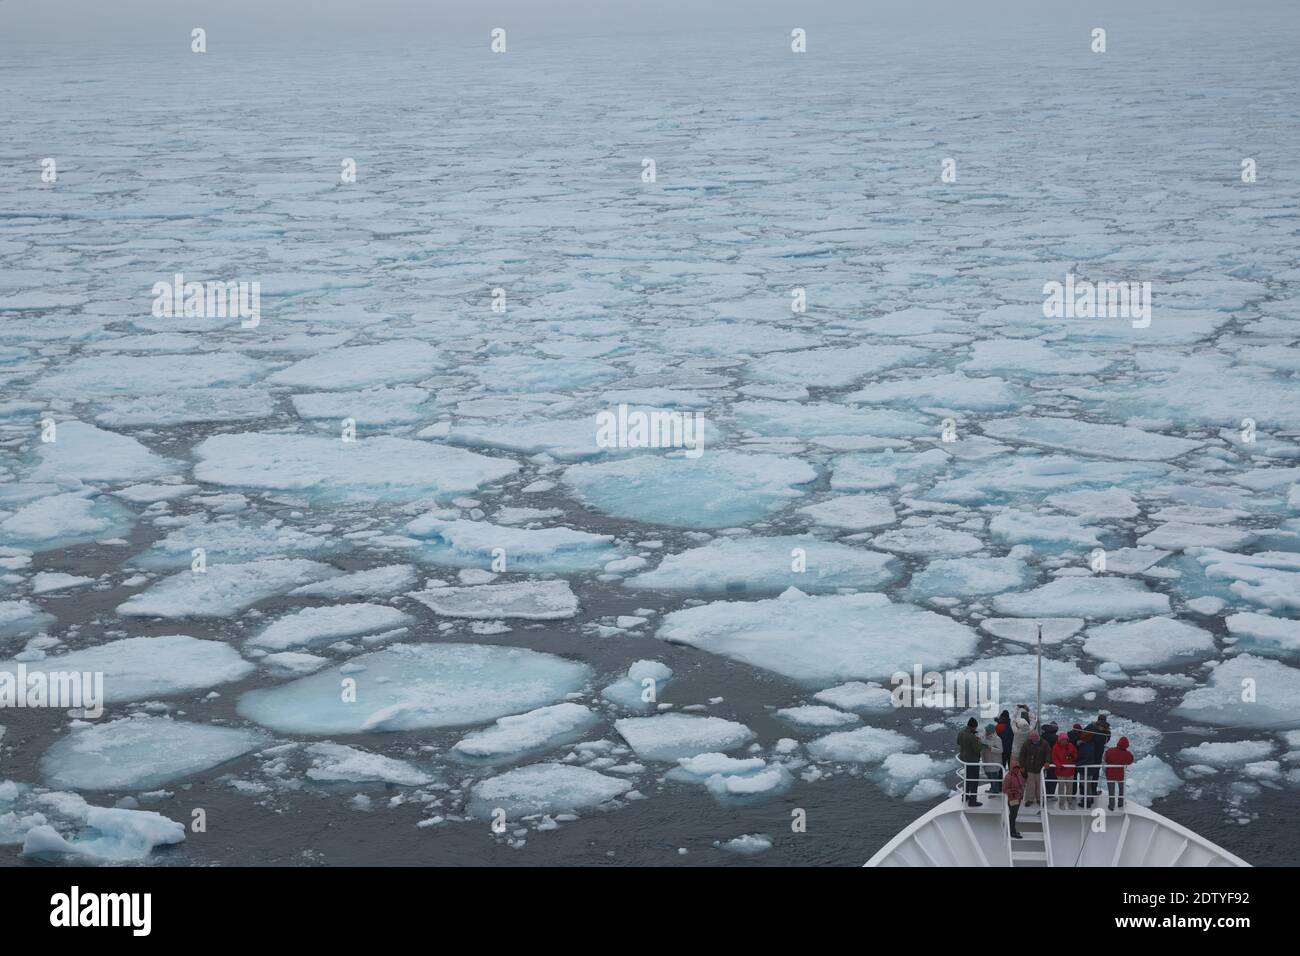 NY-Alesund, Svalbard, Norvège - juillet 24 2017 : personnes en bateau de croisière visitant la calotte glaciaire polaire et le bord de la terre gelée autour du pôle Nord. Banque D'Images